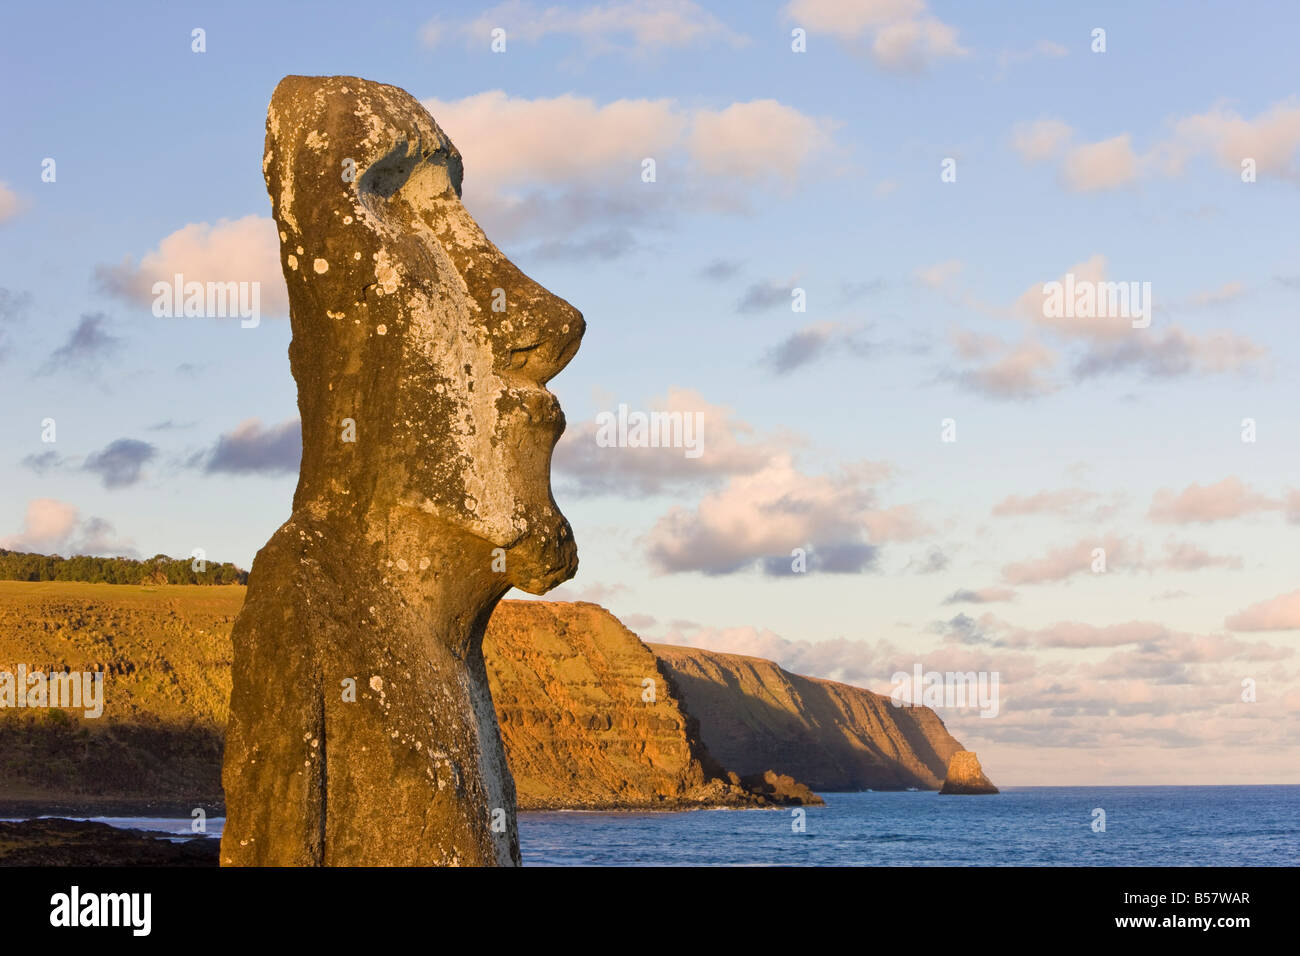 Les Moai statue monolithique en pierre géant surplombant la mer à Tongariki, île de Pâques, Chili, Amérique du Sud Banque D'Images